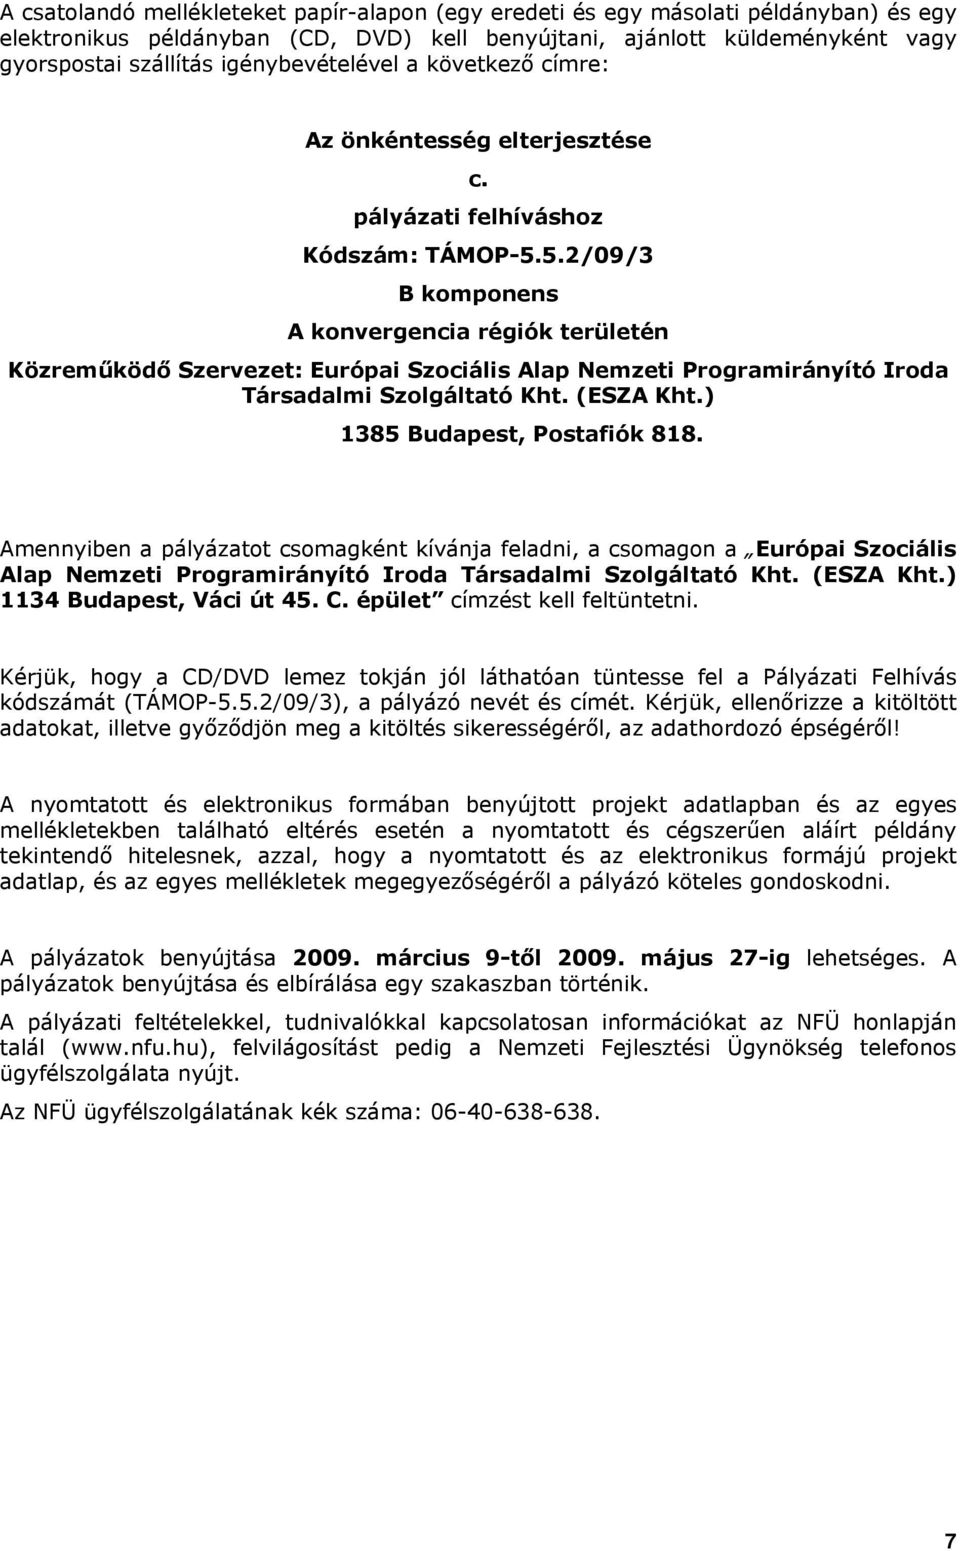 5.2/09/3 B komponens A konvergencia régiók területén Közreműködő Szervezet: Európai Szociális Alap Nemzeti Programirányító Iroda Társadalmi Szolgáltató Kht. (ESZA Kht.) 1385 Budapest, Postafiók 818.